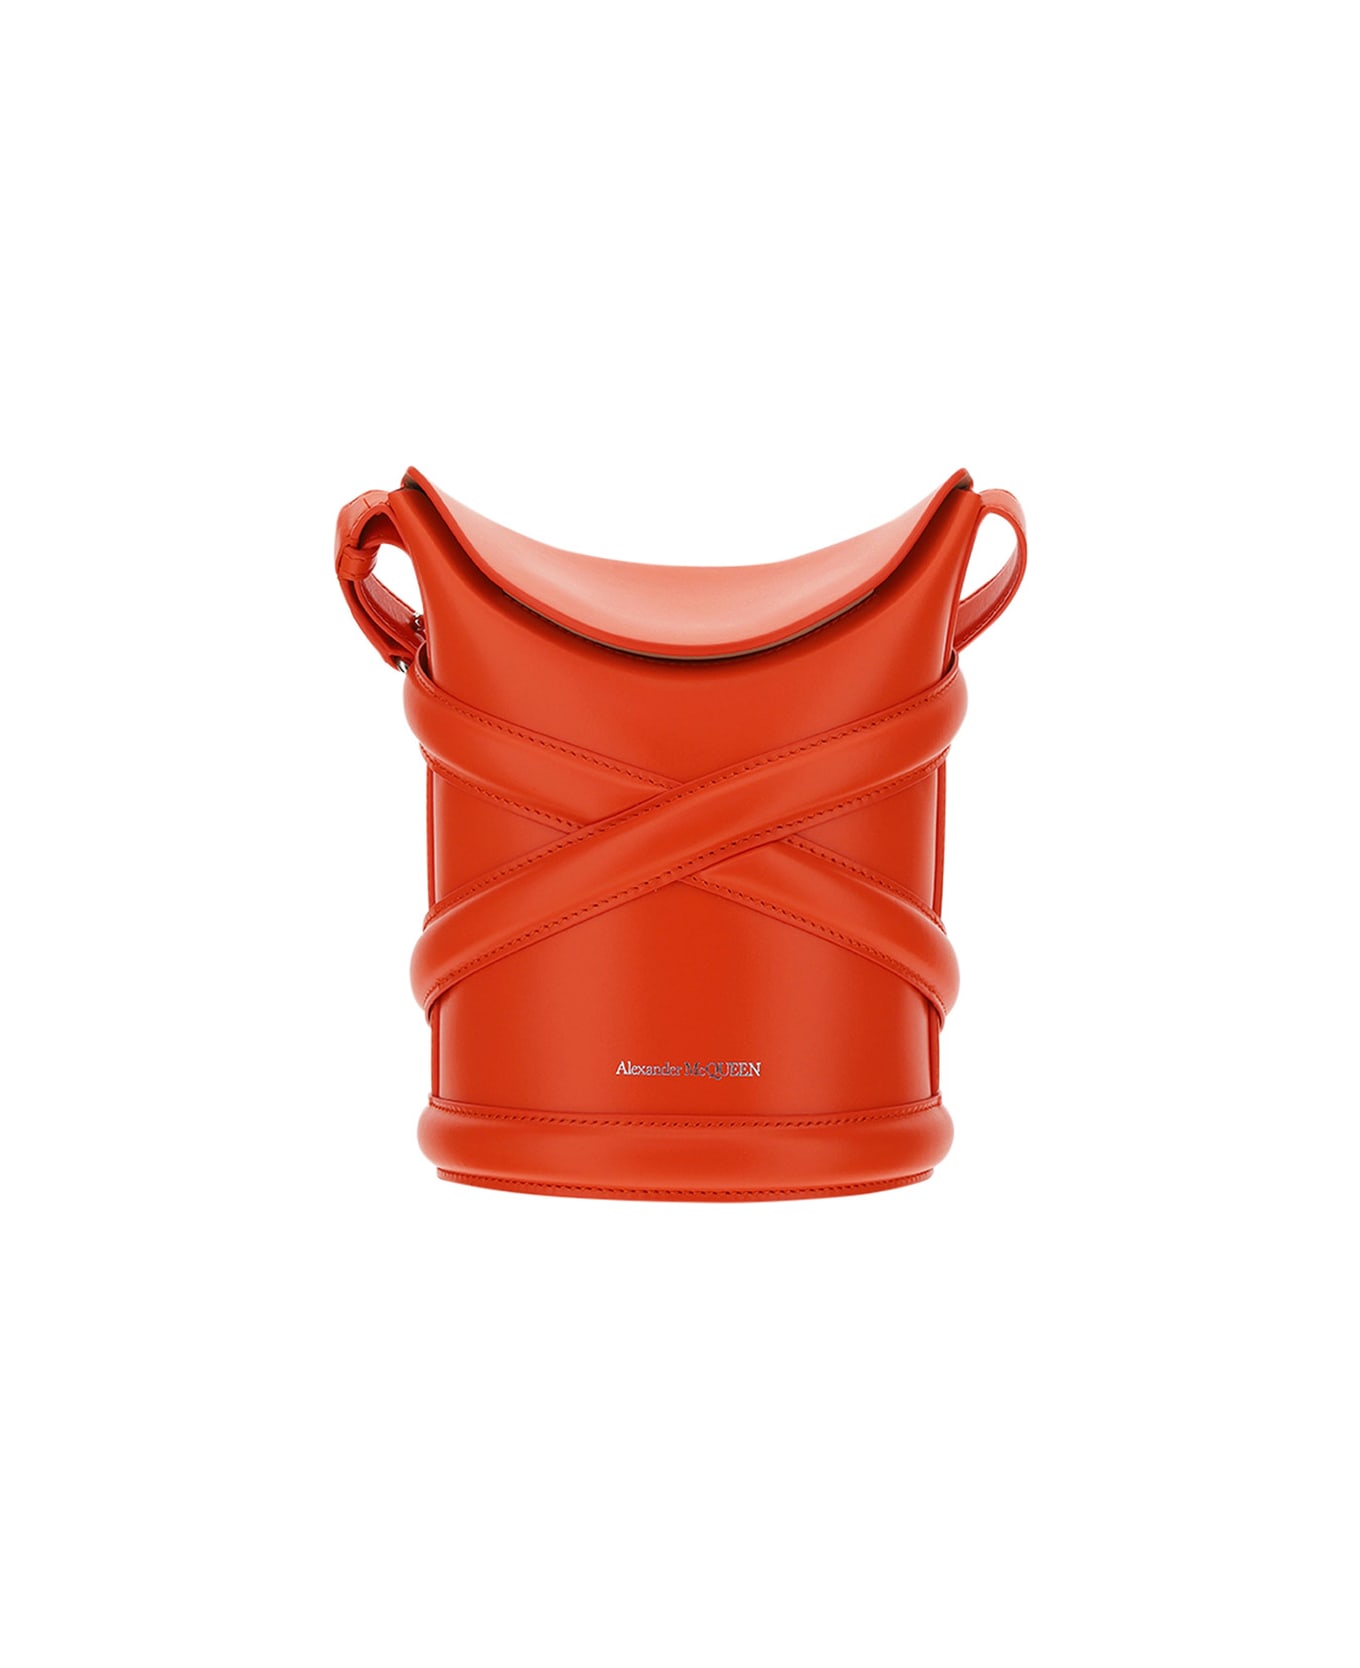 Alexander McQueen The Curve Bucket Bag - Orange